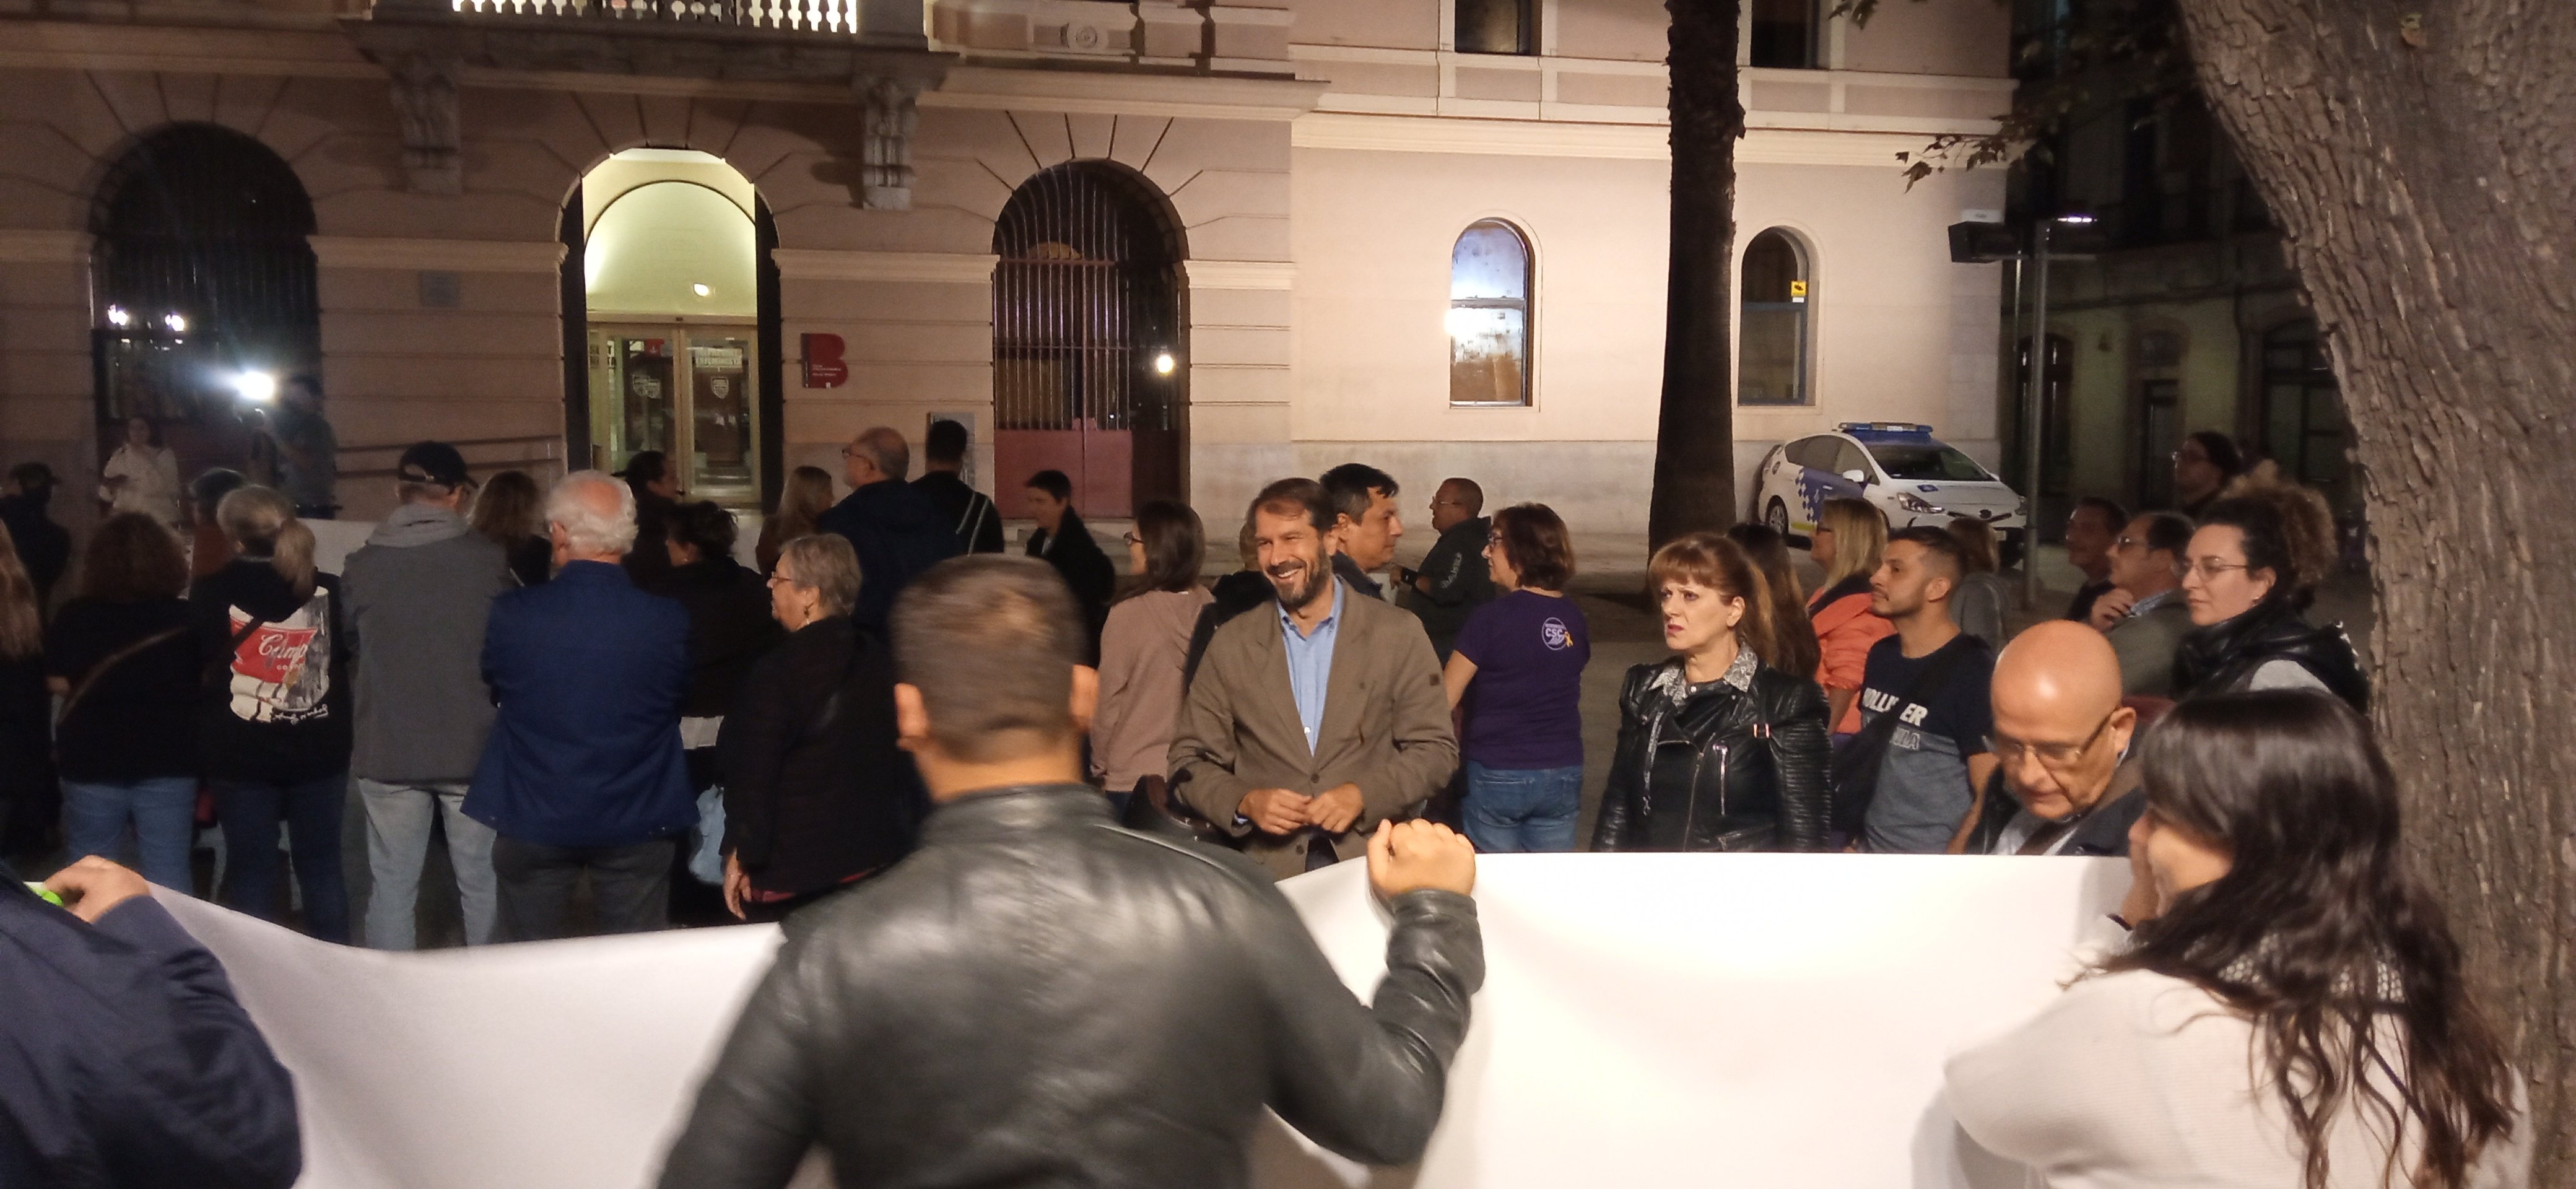 Malestar per la presència de Vox en protestes veïnals a Barcelona: “Hem de desemmascarar el feixisme”